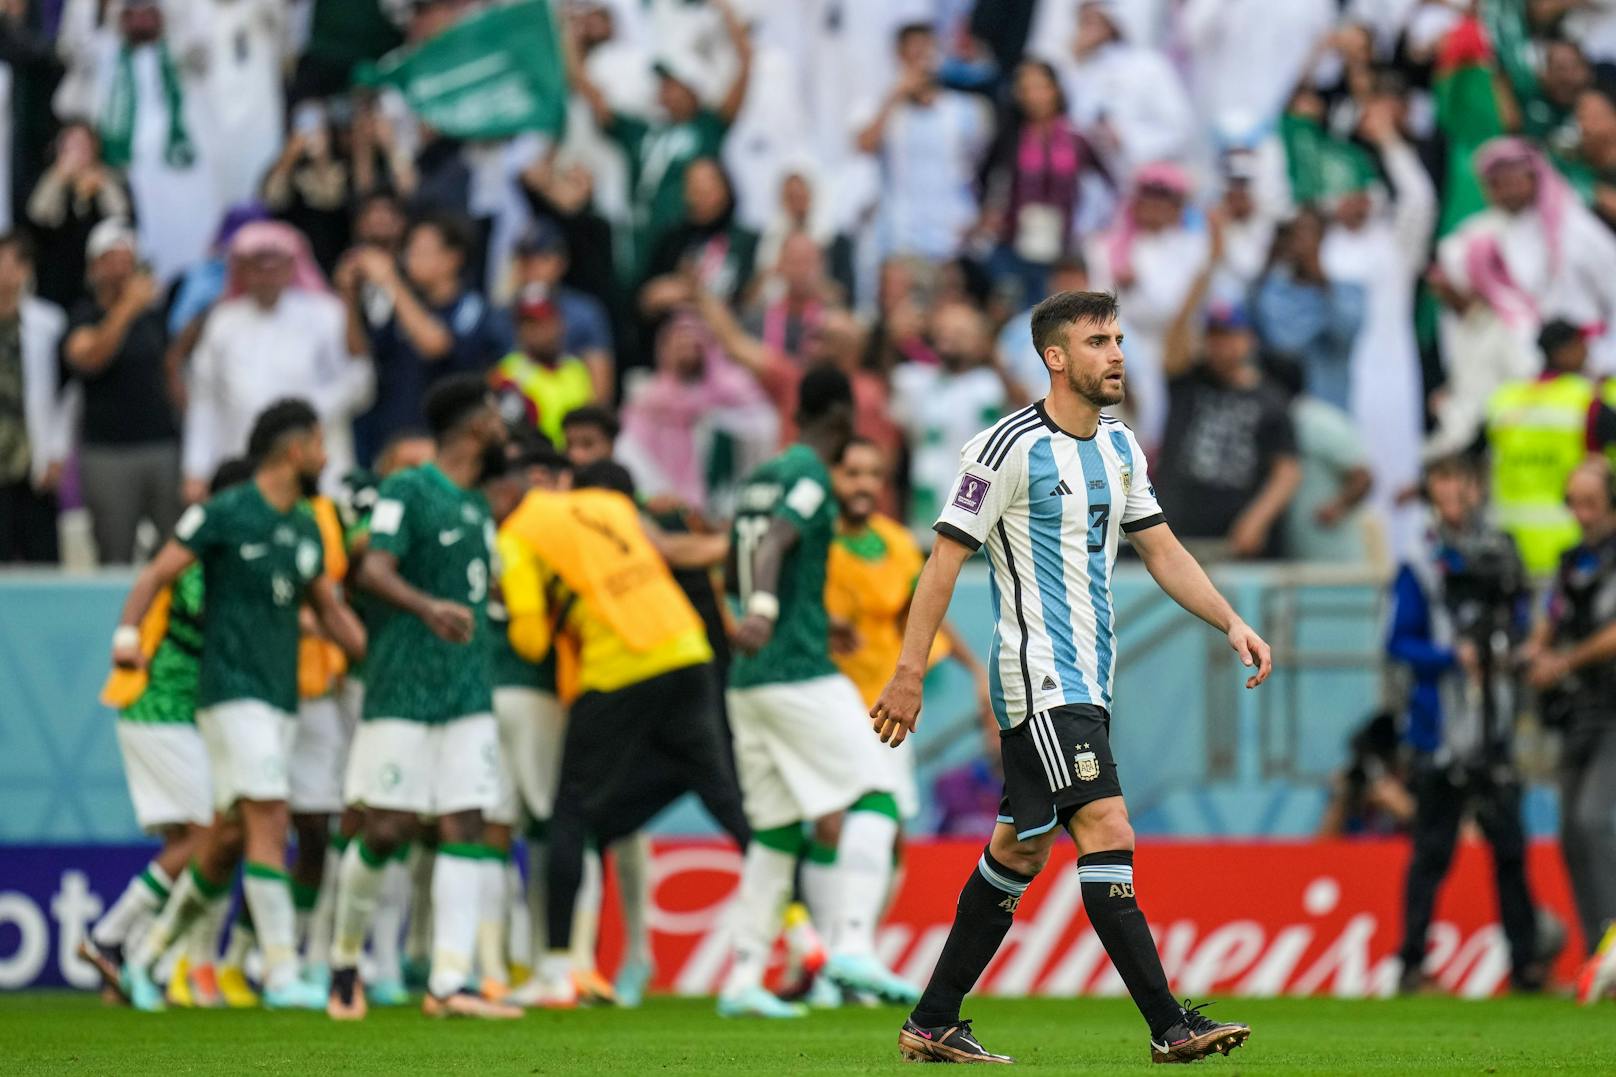 Die erste Sensation gelang Saudi-Arabien, das gegen WM-Mitfavorit Argentinien nach 0:1-Rückstand mit 2:1 gewann.